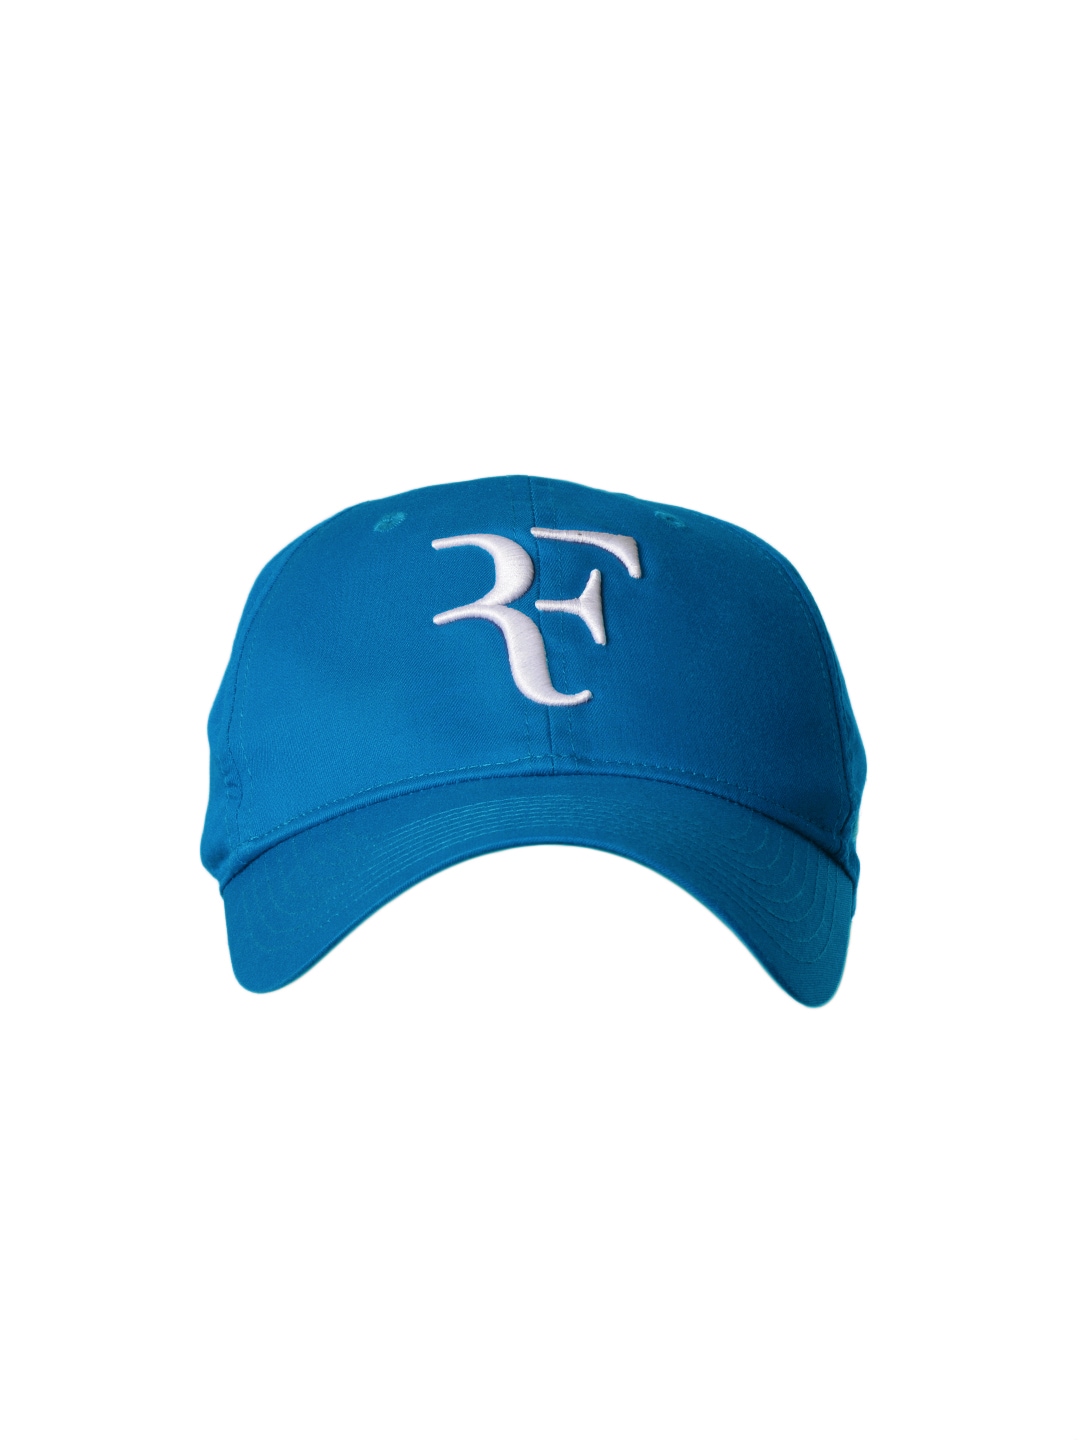 Nike Unisex Federer Blue Cap